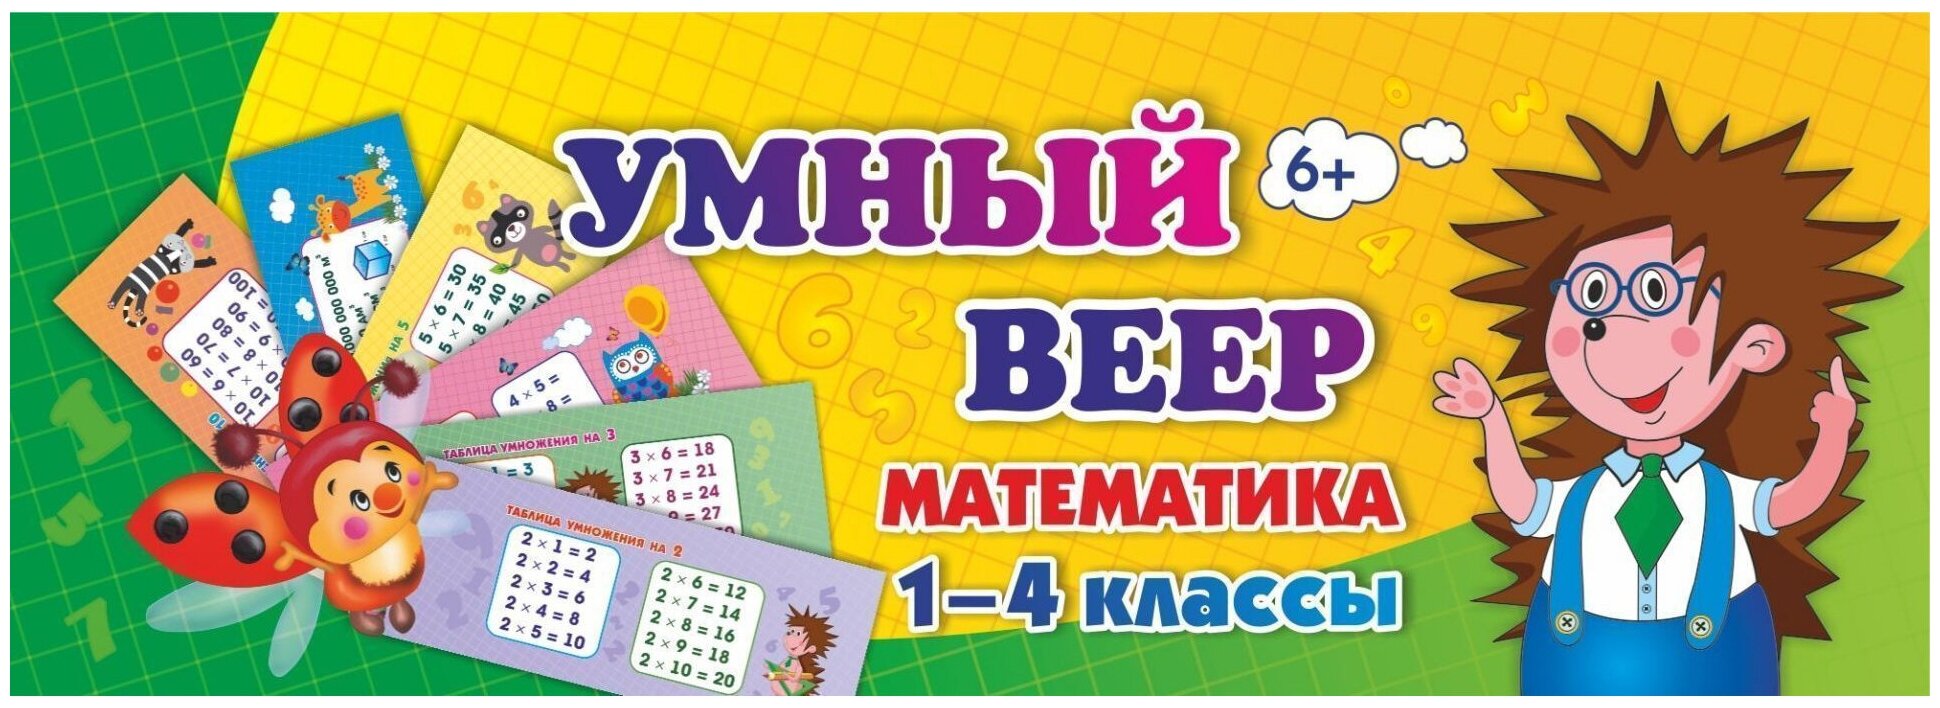 Учебный веер "Математика. 1-4 классы", 60х170мм, картон мелованный, 32л. (НВУ-1)